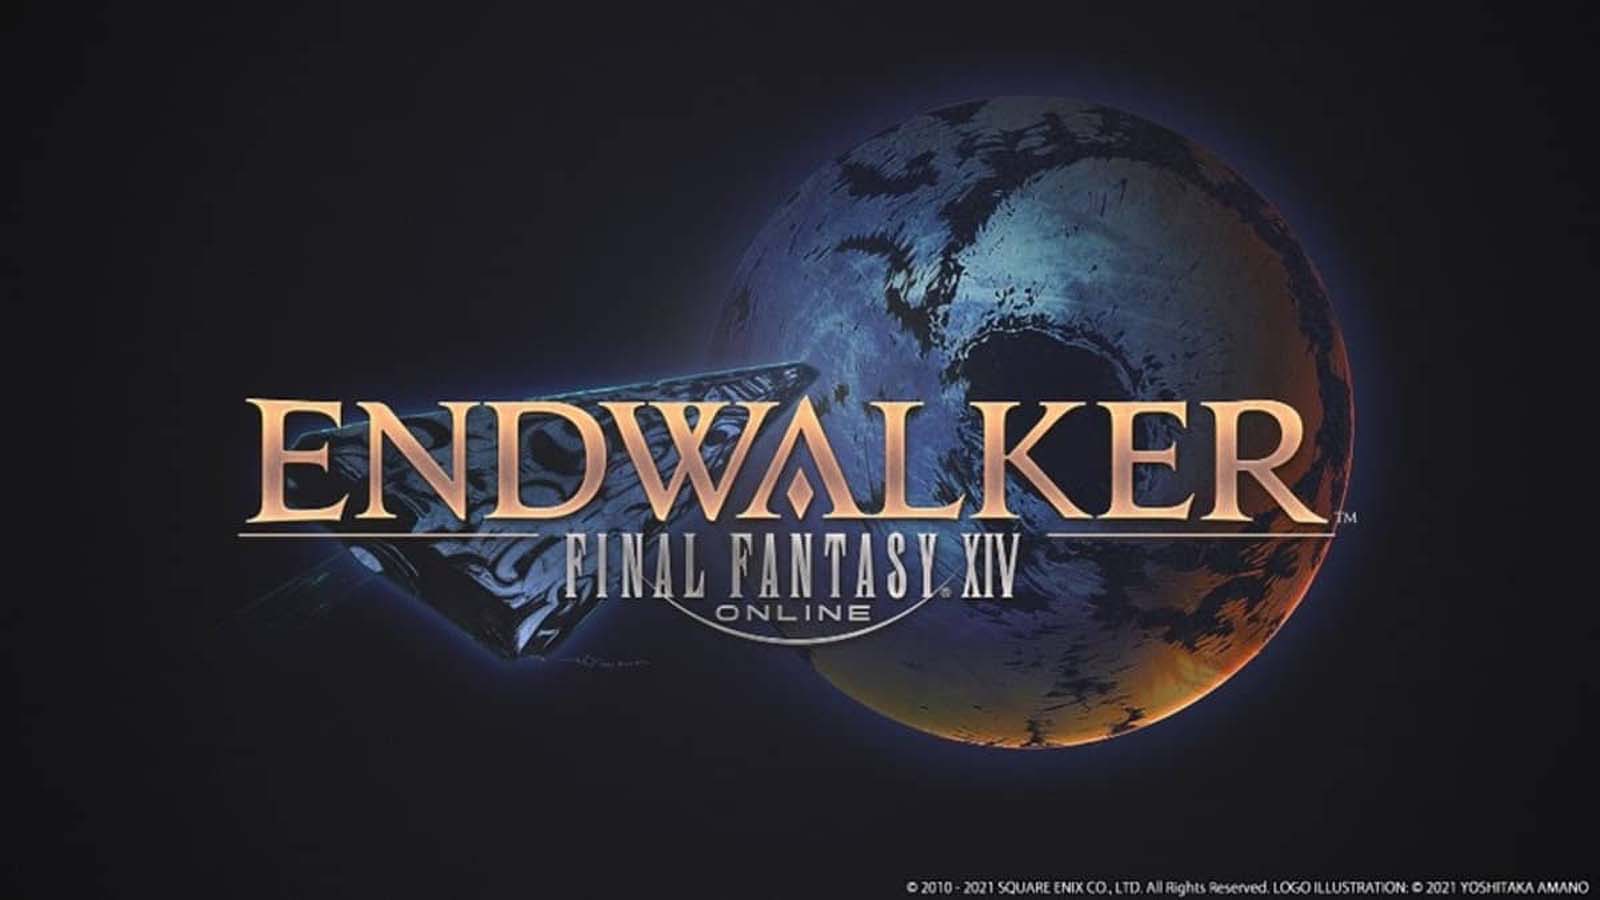 Final Fantasy Xiv: Endwalker